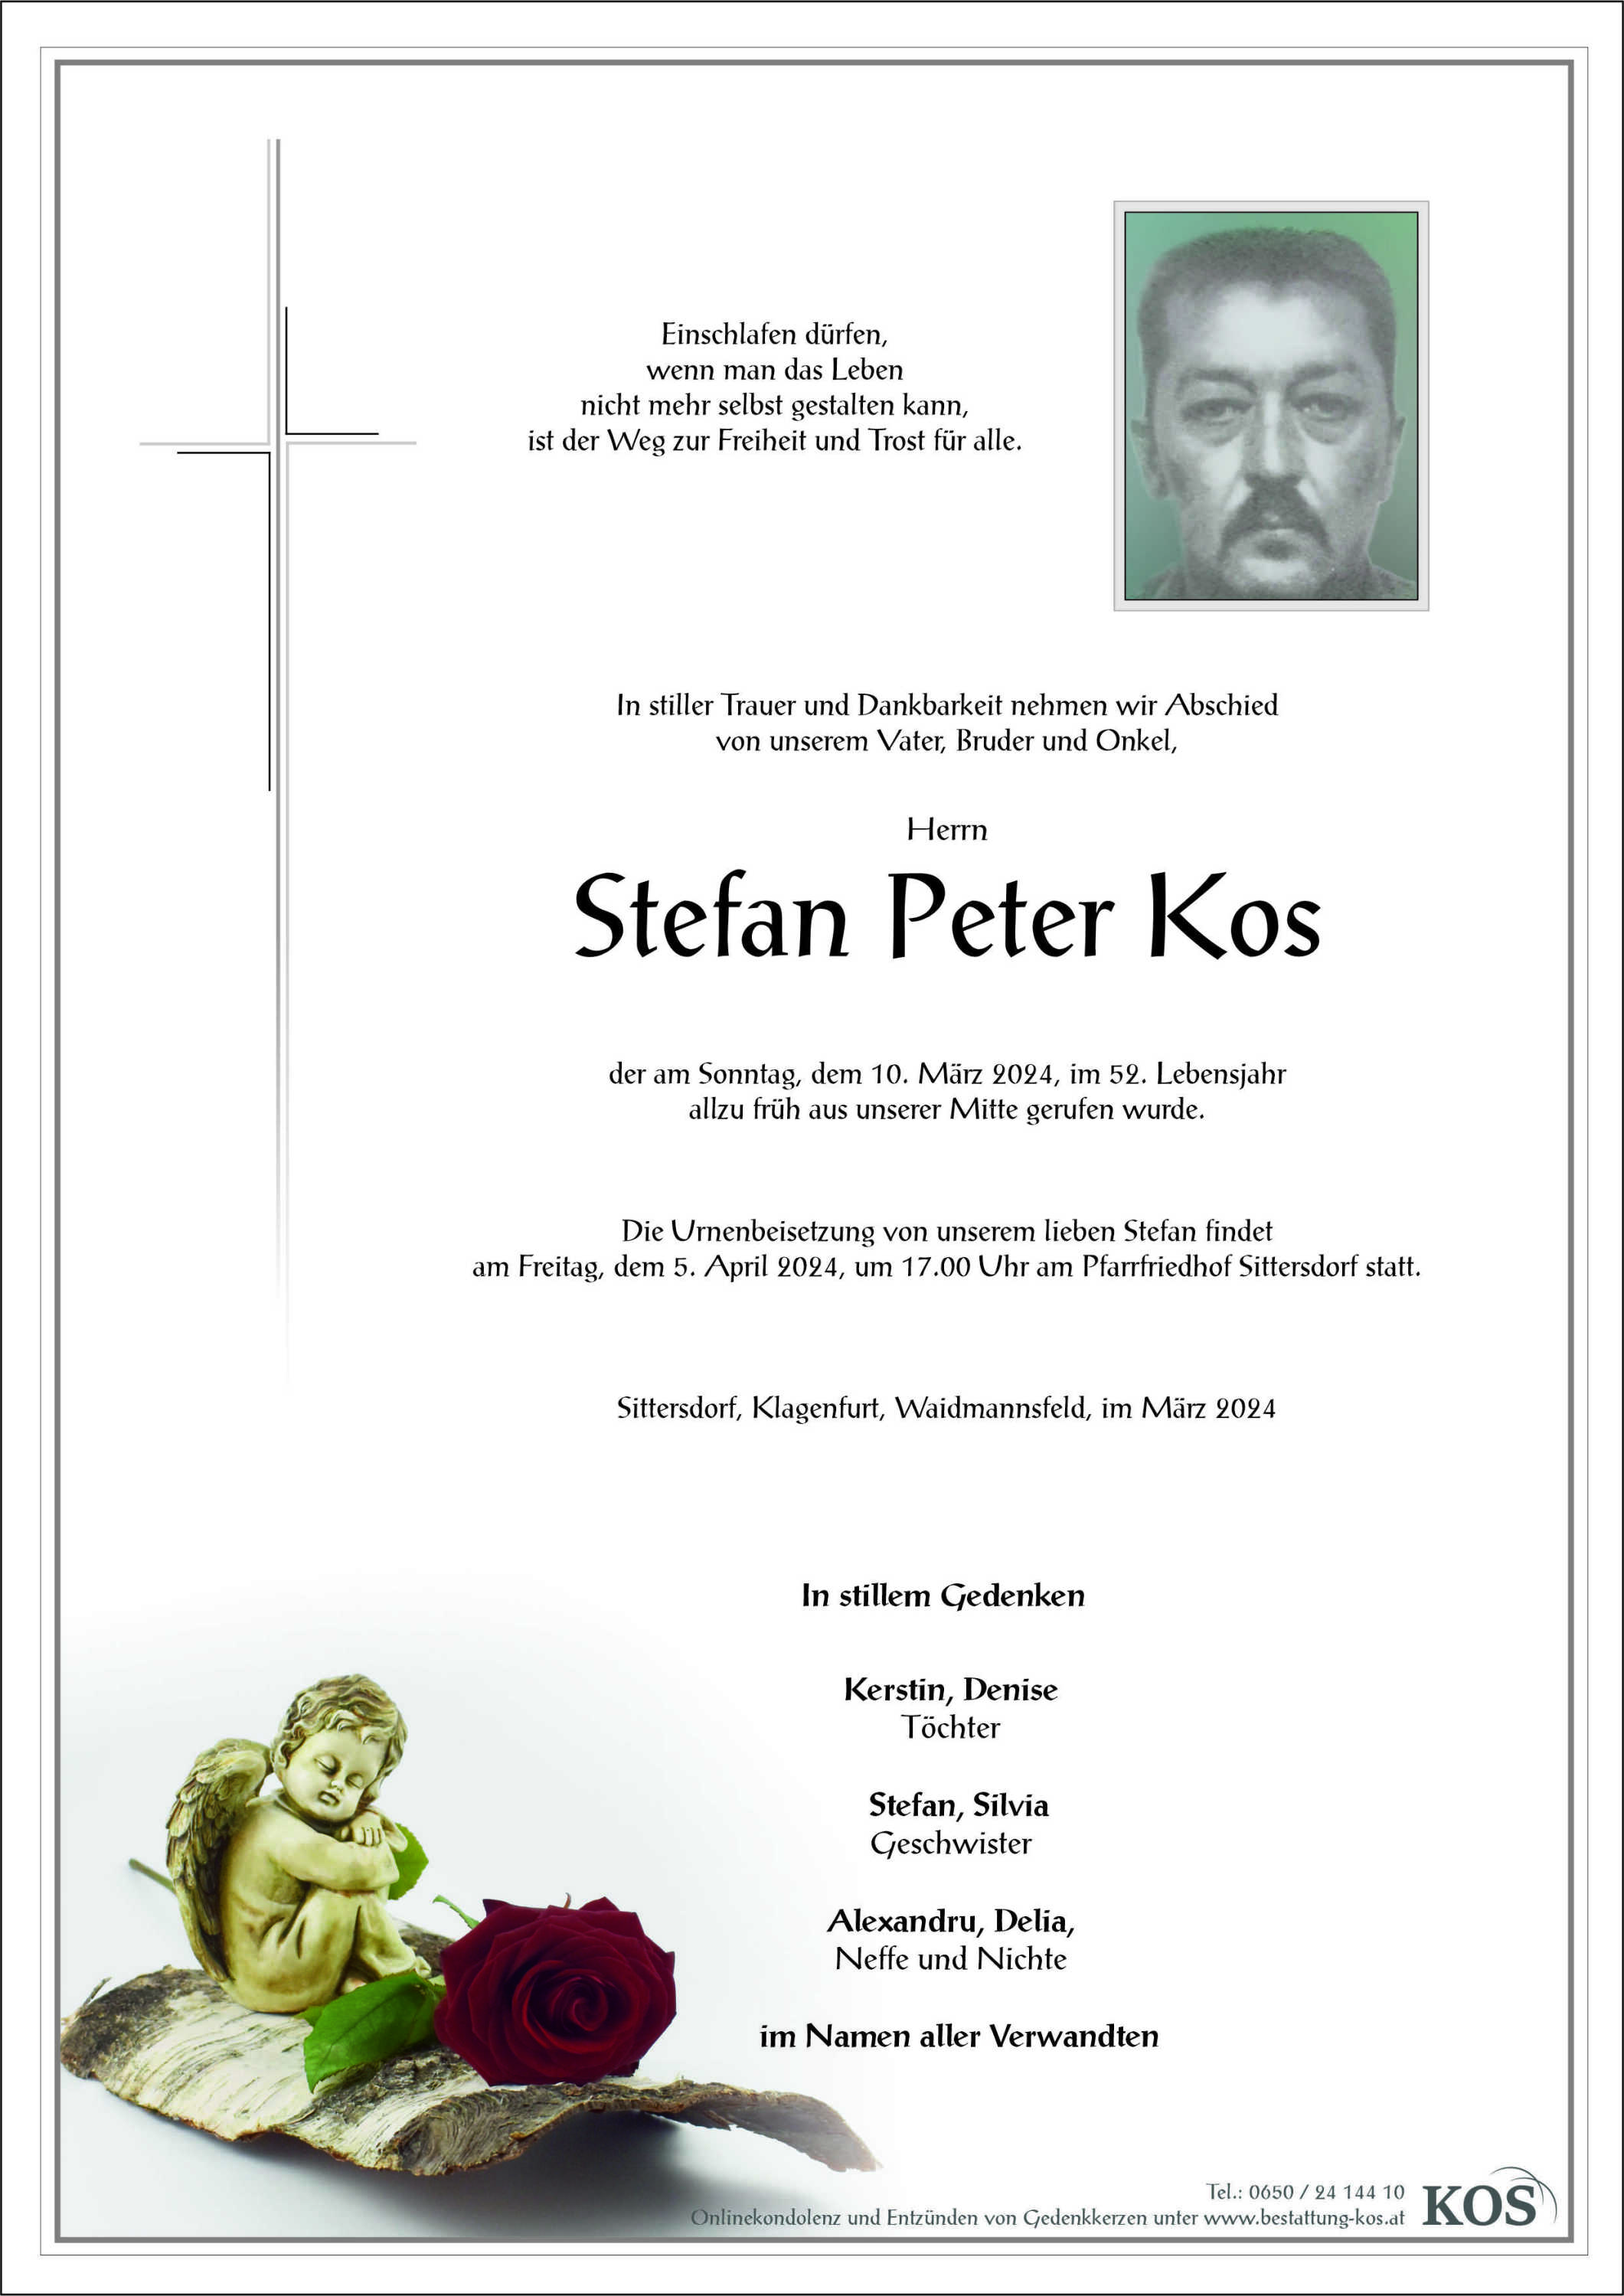 Stefan Peter Kos